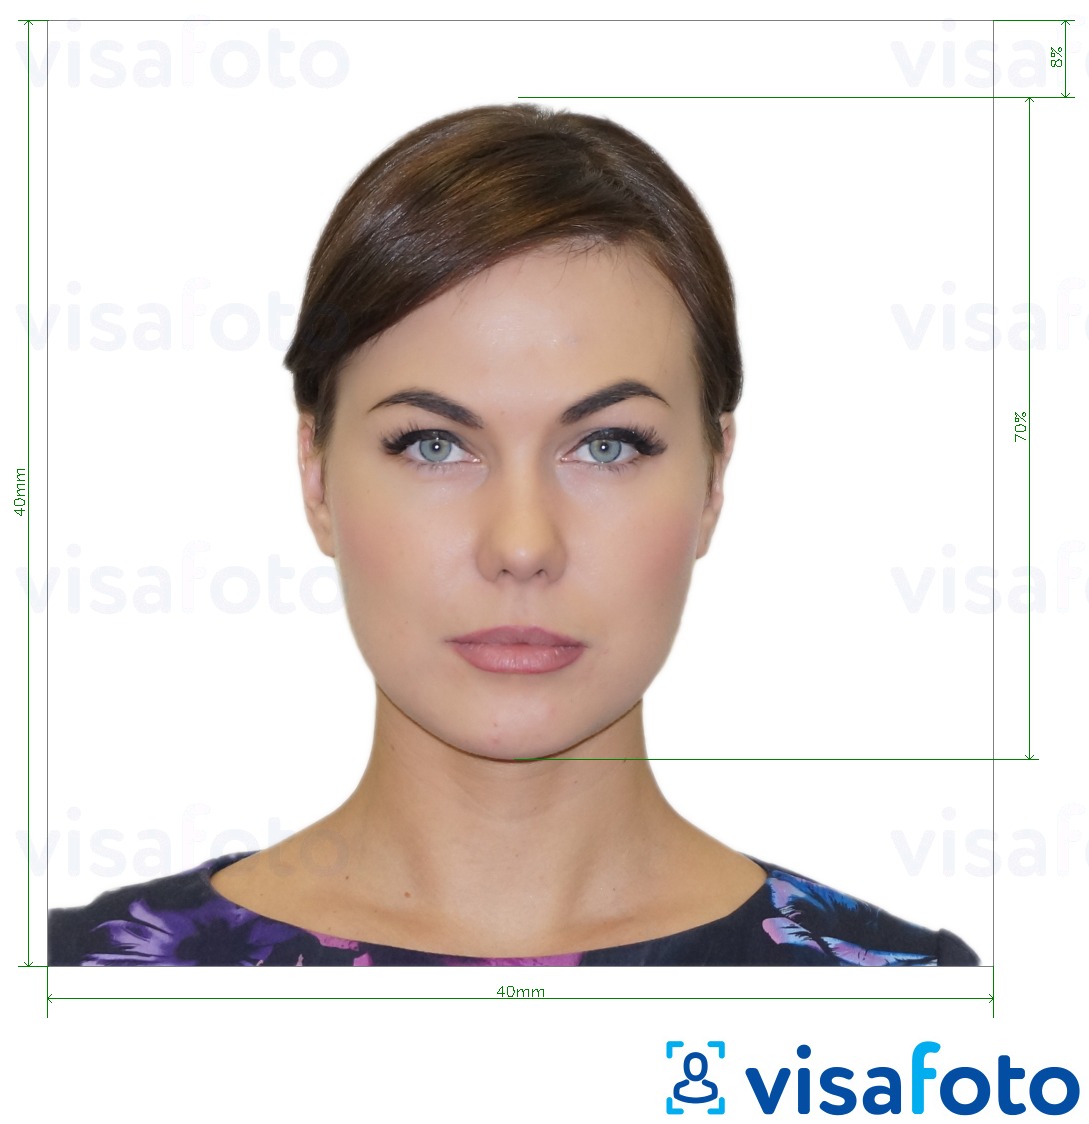 Ejemplo de foto para Pasaporte Argentino 4x4 cm (40x40 mm) con la especificación del tamaño exacto